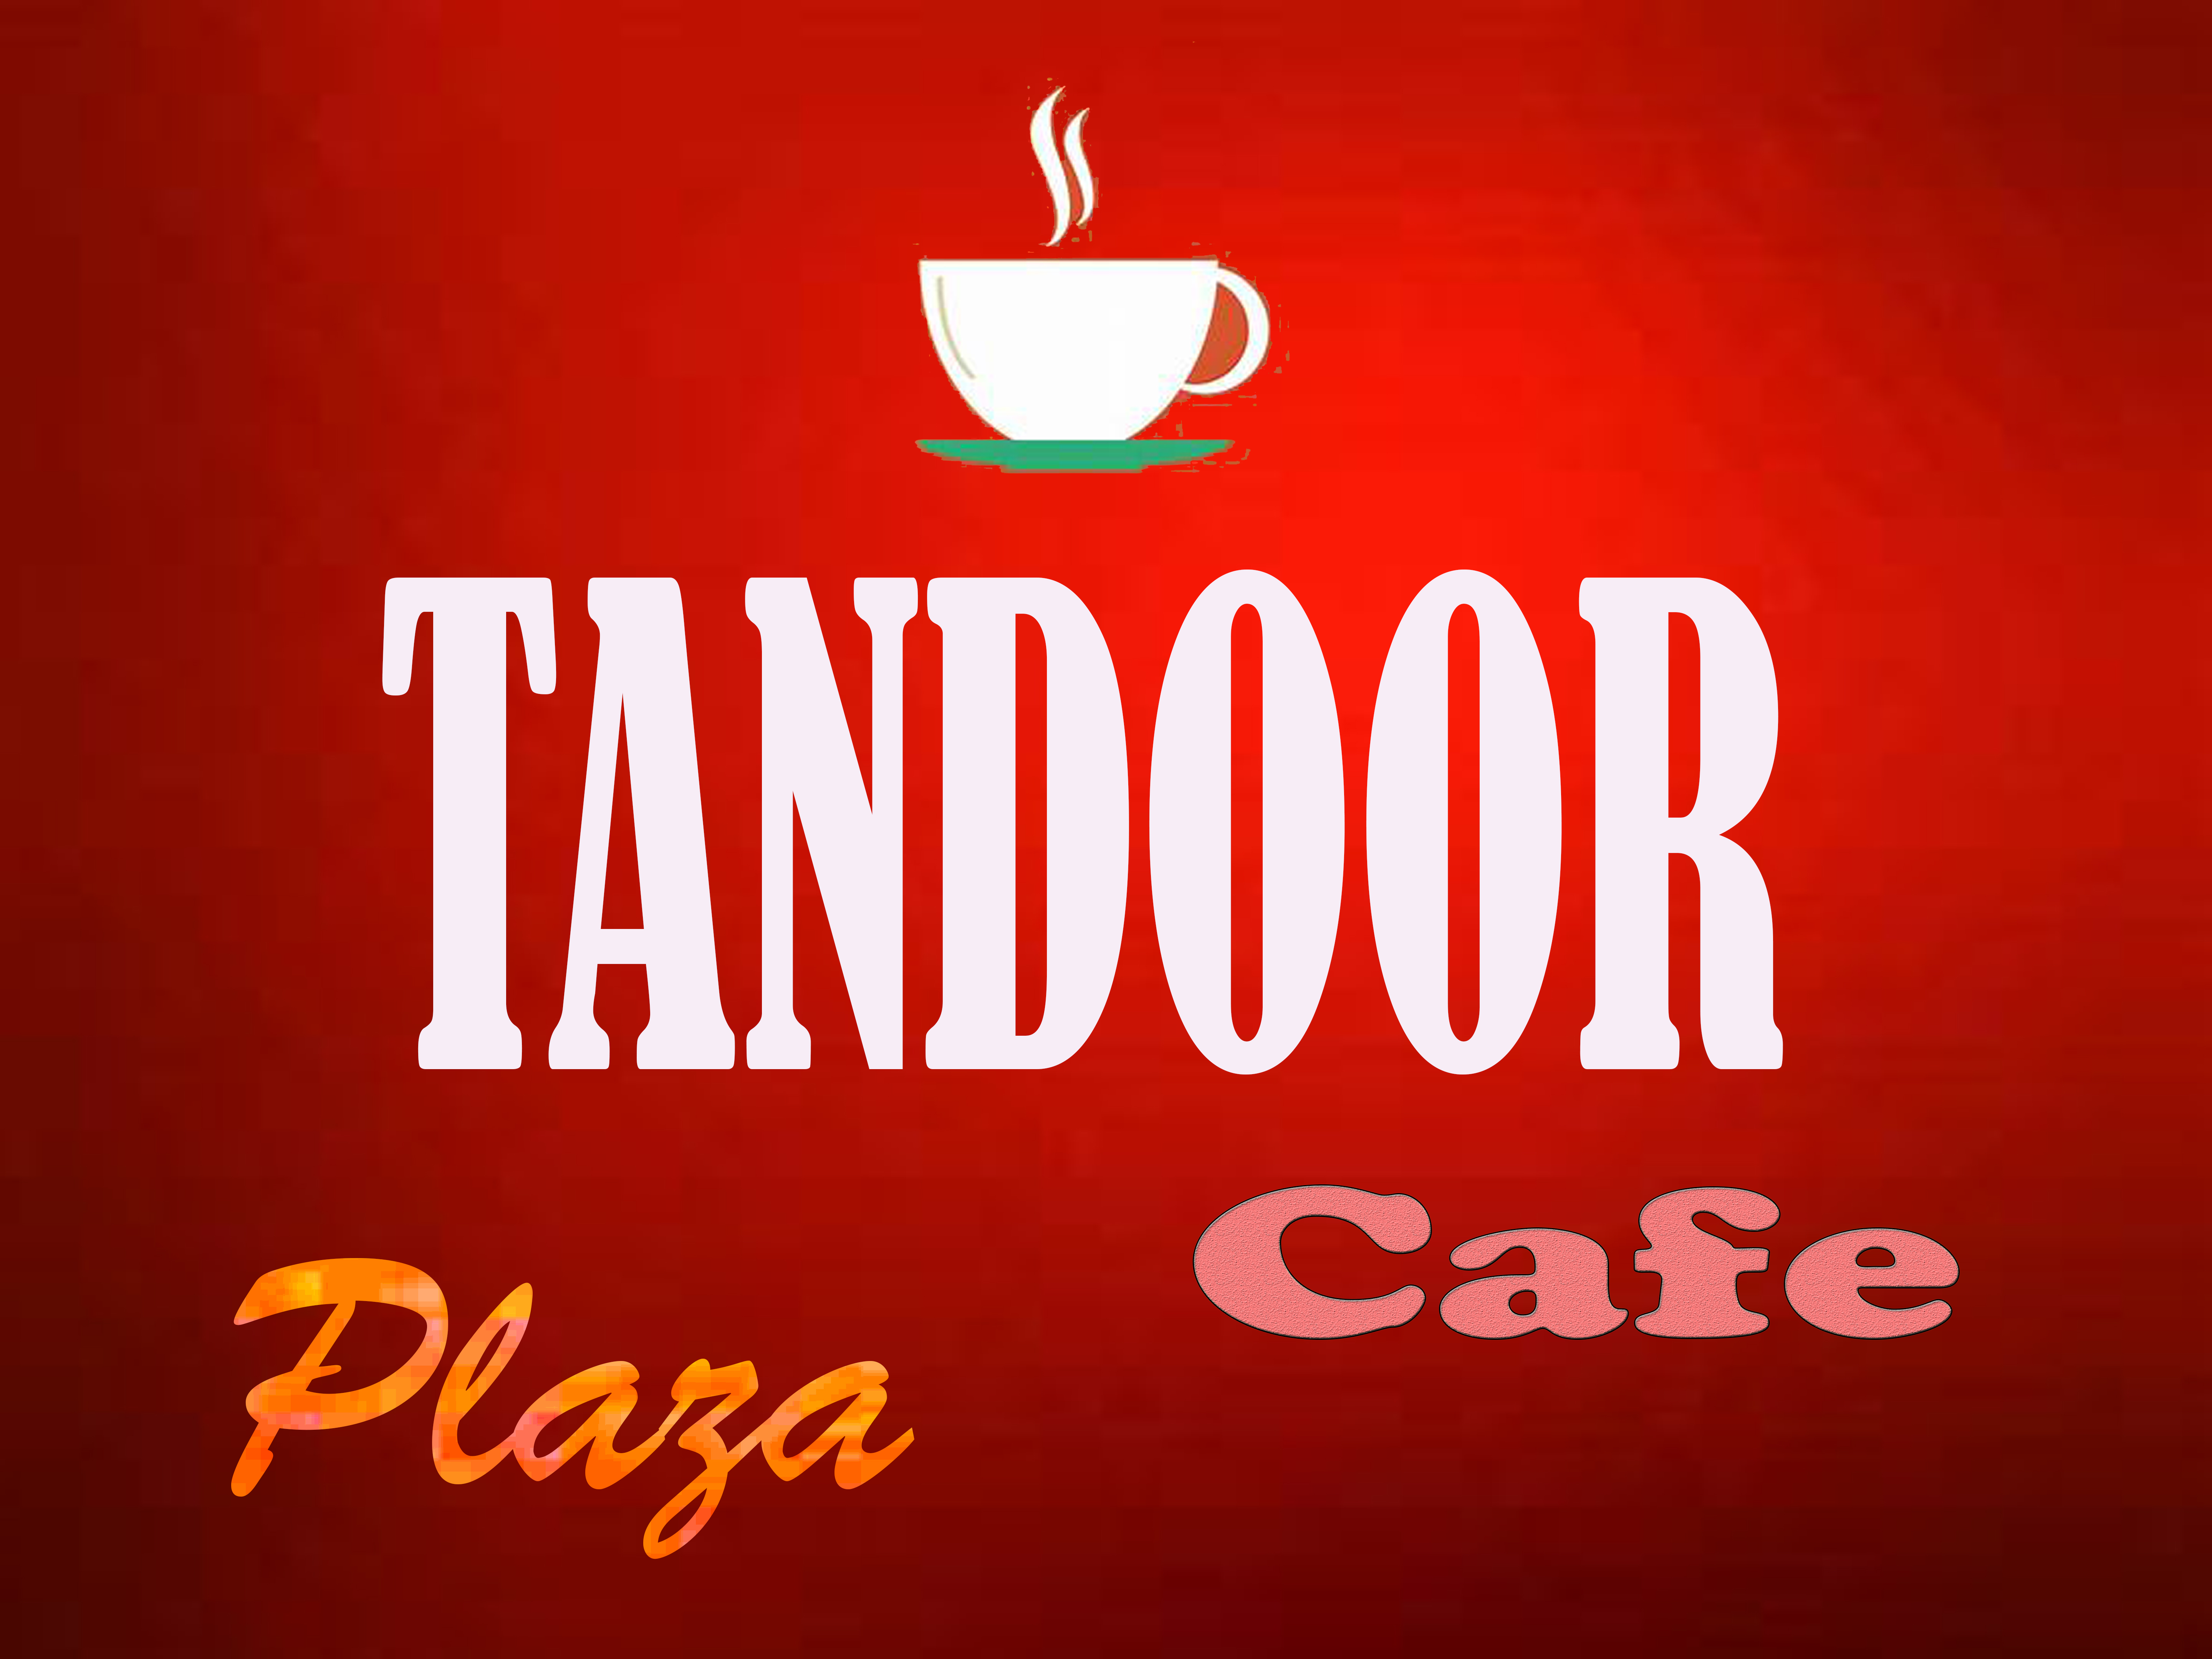 Tandoor Plaza Cafe